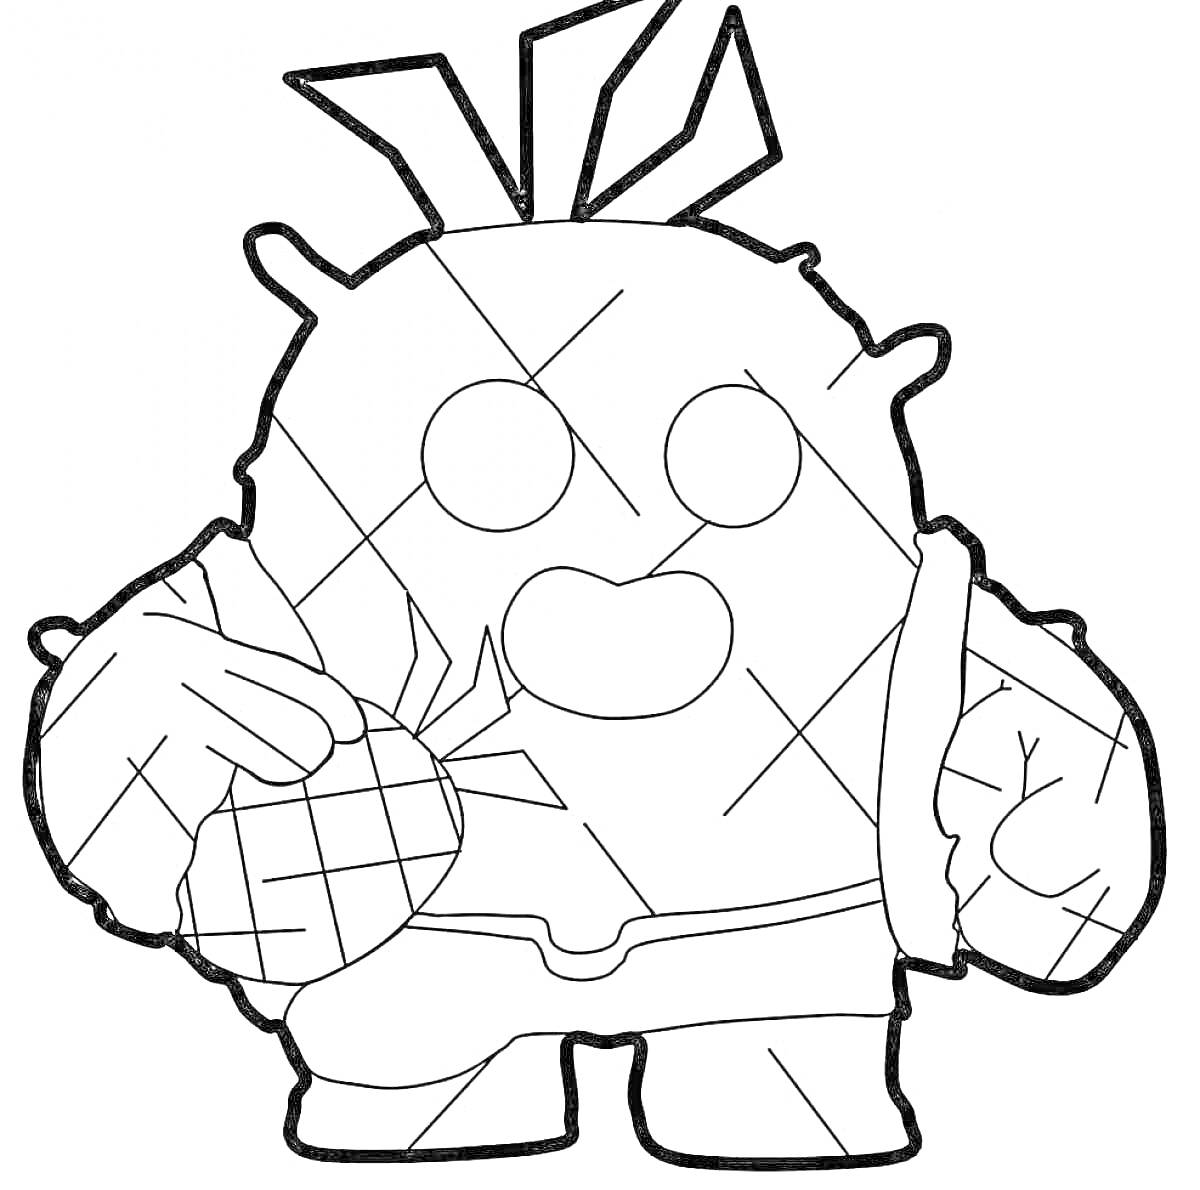 Раскраска персонажа Спайк из игры Браво Старс с гранатой из кактуса